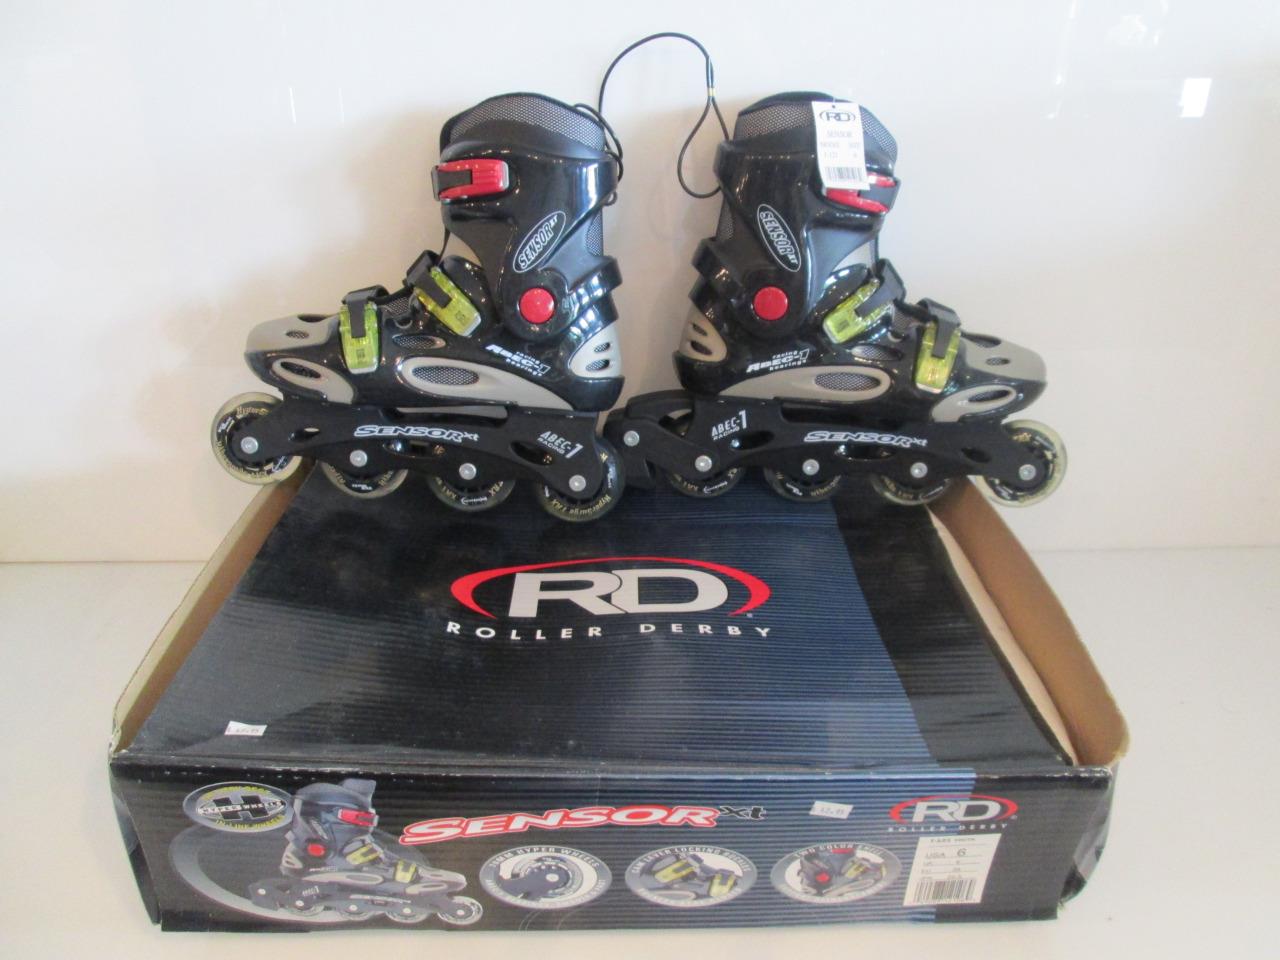 NIB Roller Derby Sensor XT I-121 Youth Inline Skate Hockey Blades Size 1 4 5 & 6 